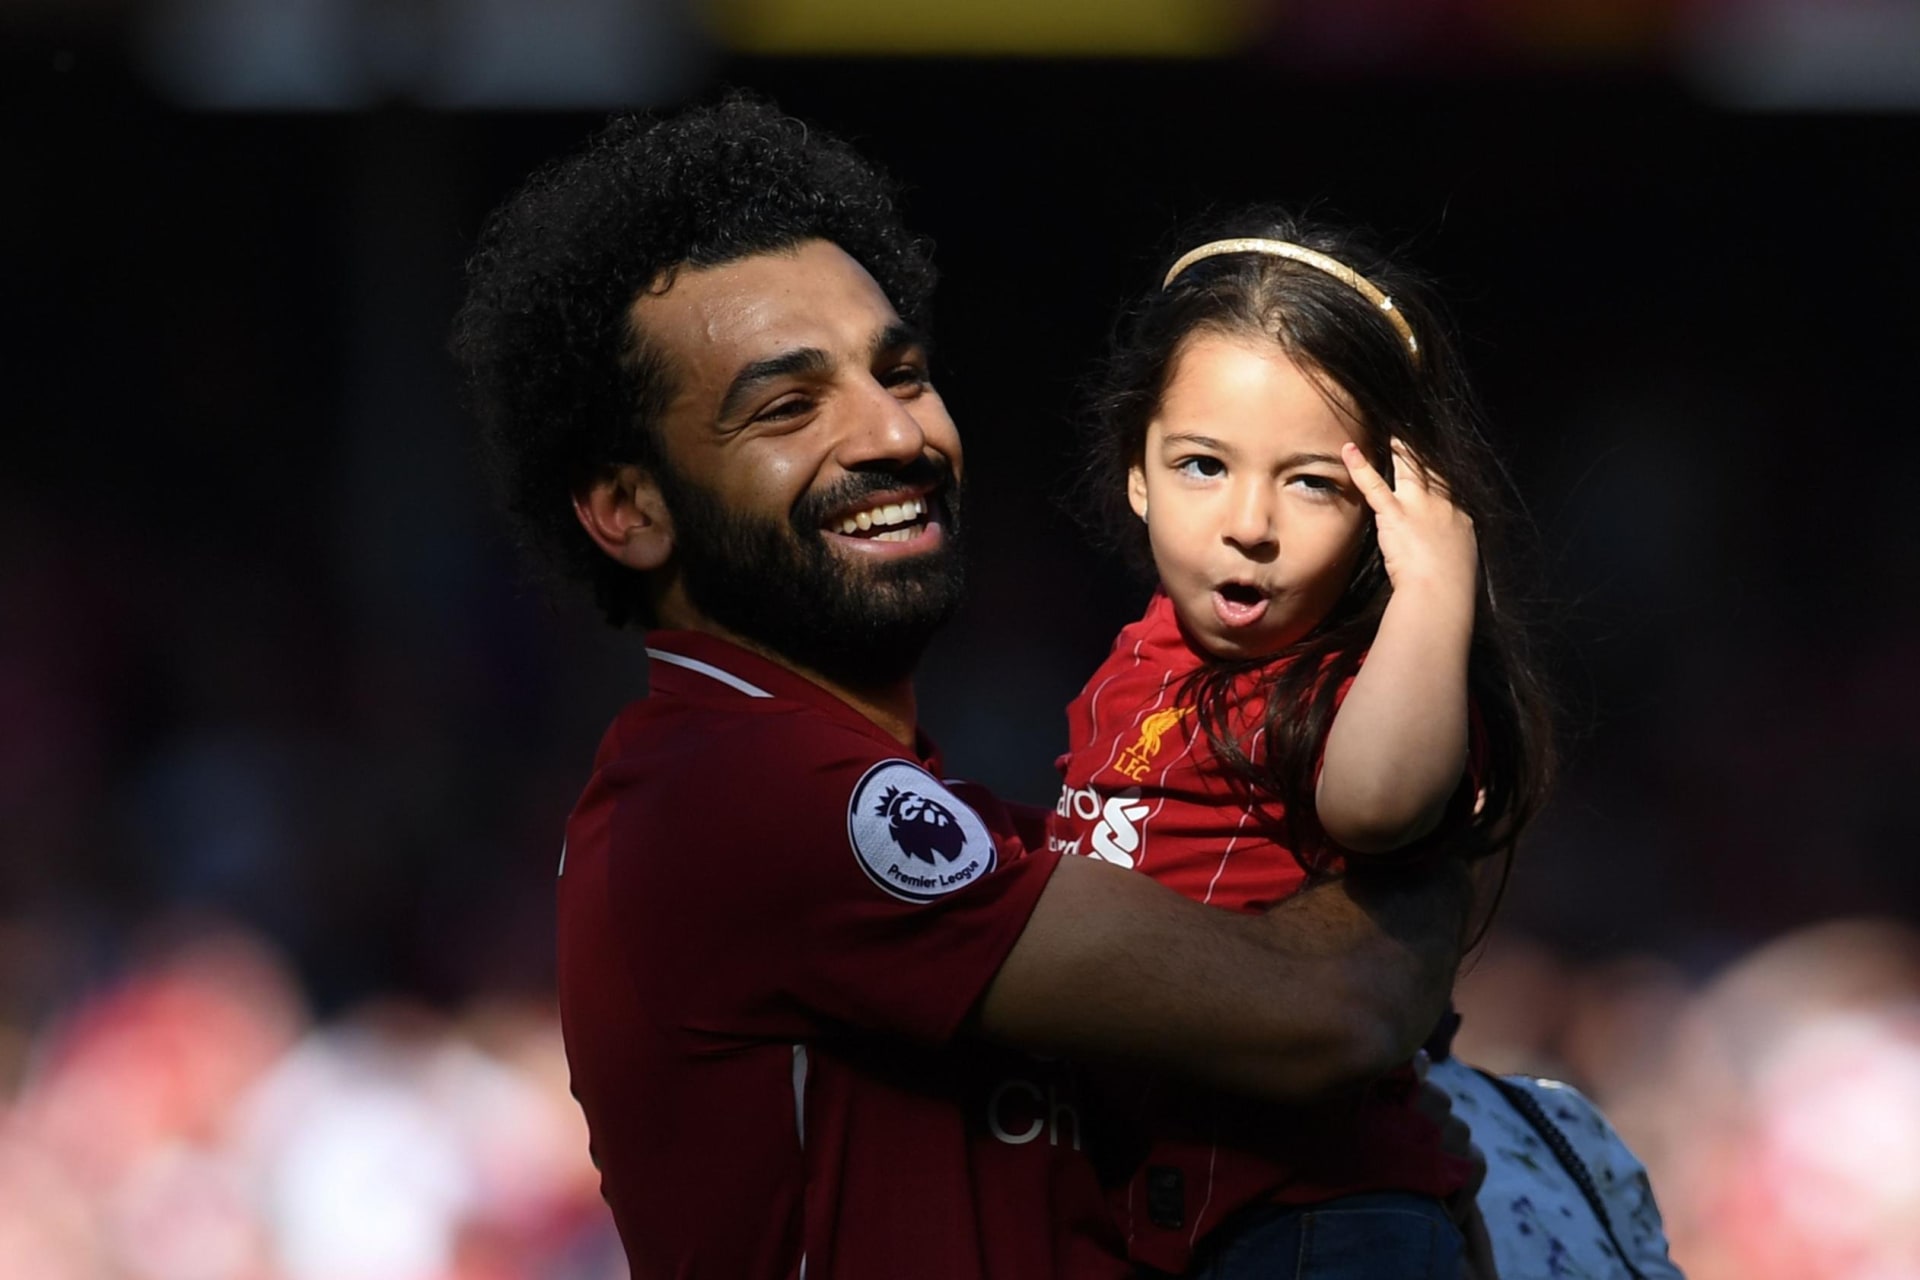 محمد صلاح نجم نادي ليفربول الإنجليزي مع ابنته مكة في ختام مباريات الدوري الإنجليزي بالموسم الماضي 